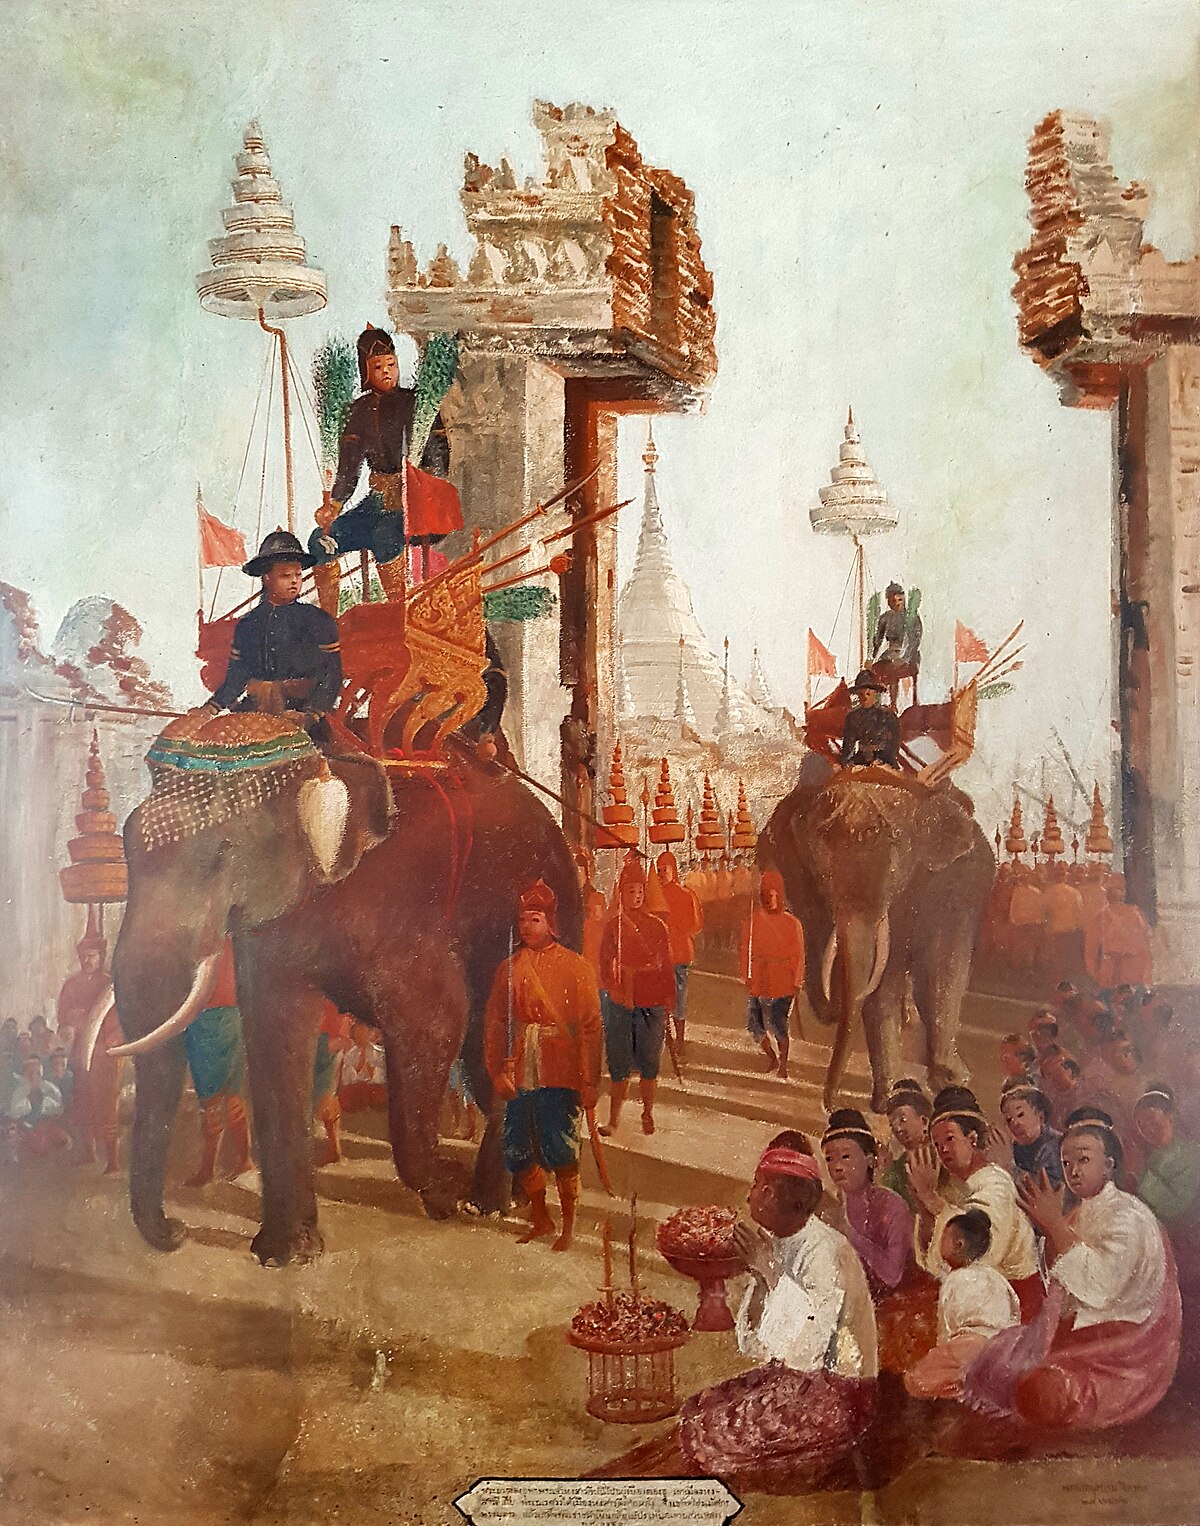 Niedergang und Untergang des Khmer-Reiches